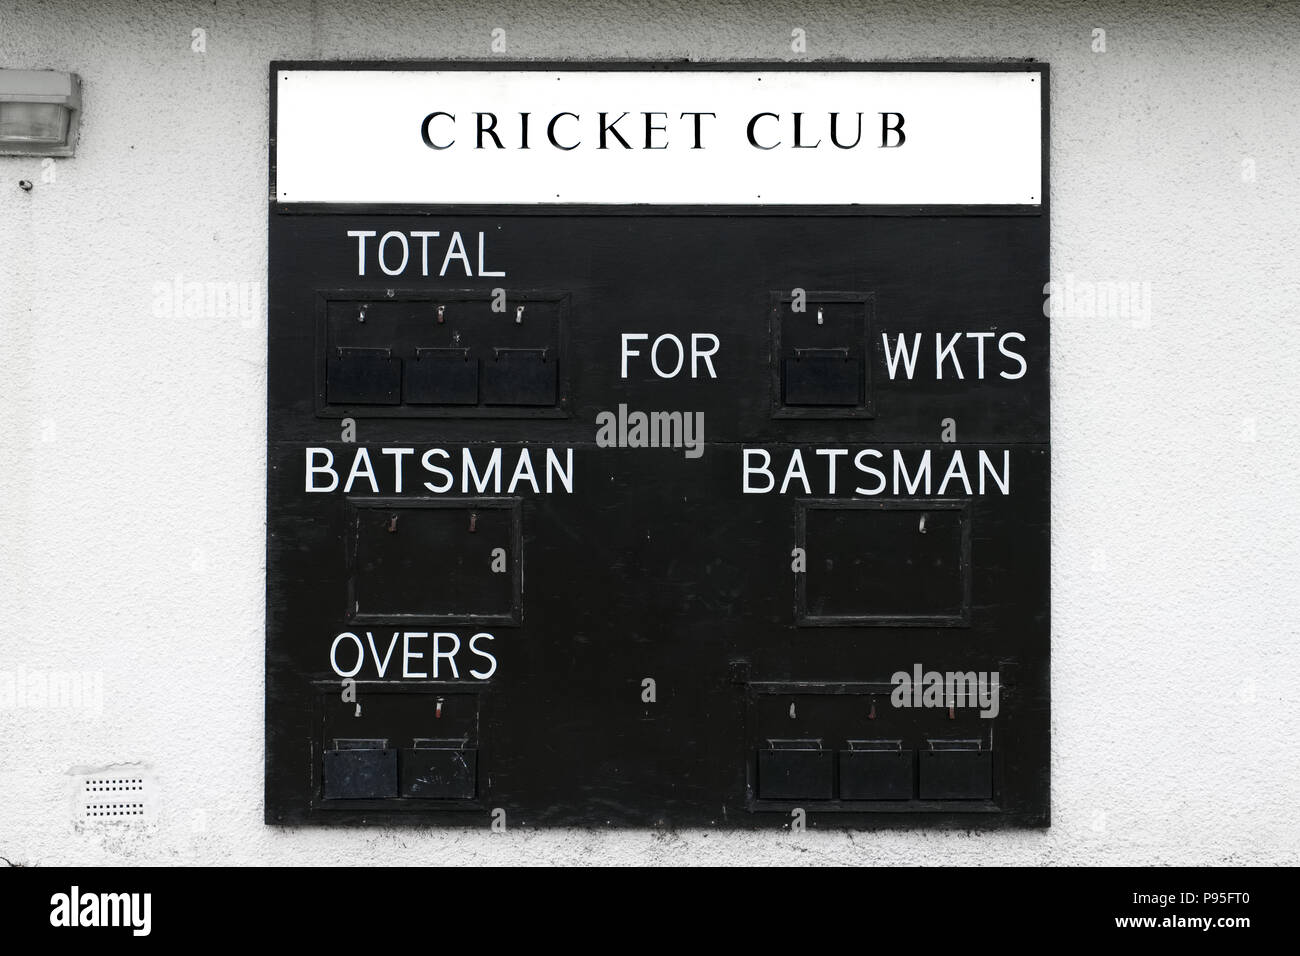 Cricket club score board blank batsman and wickets Stock Photo